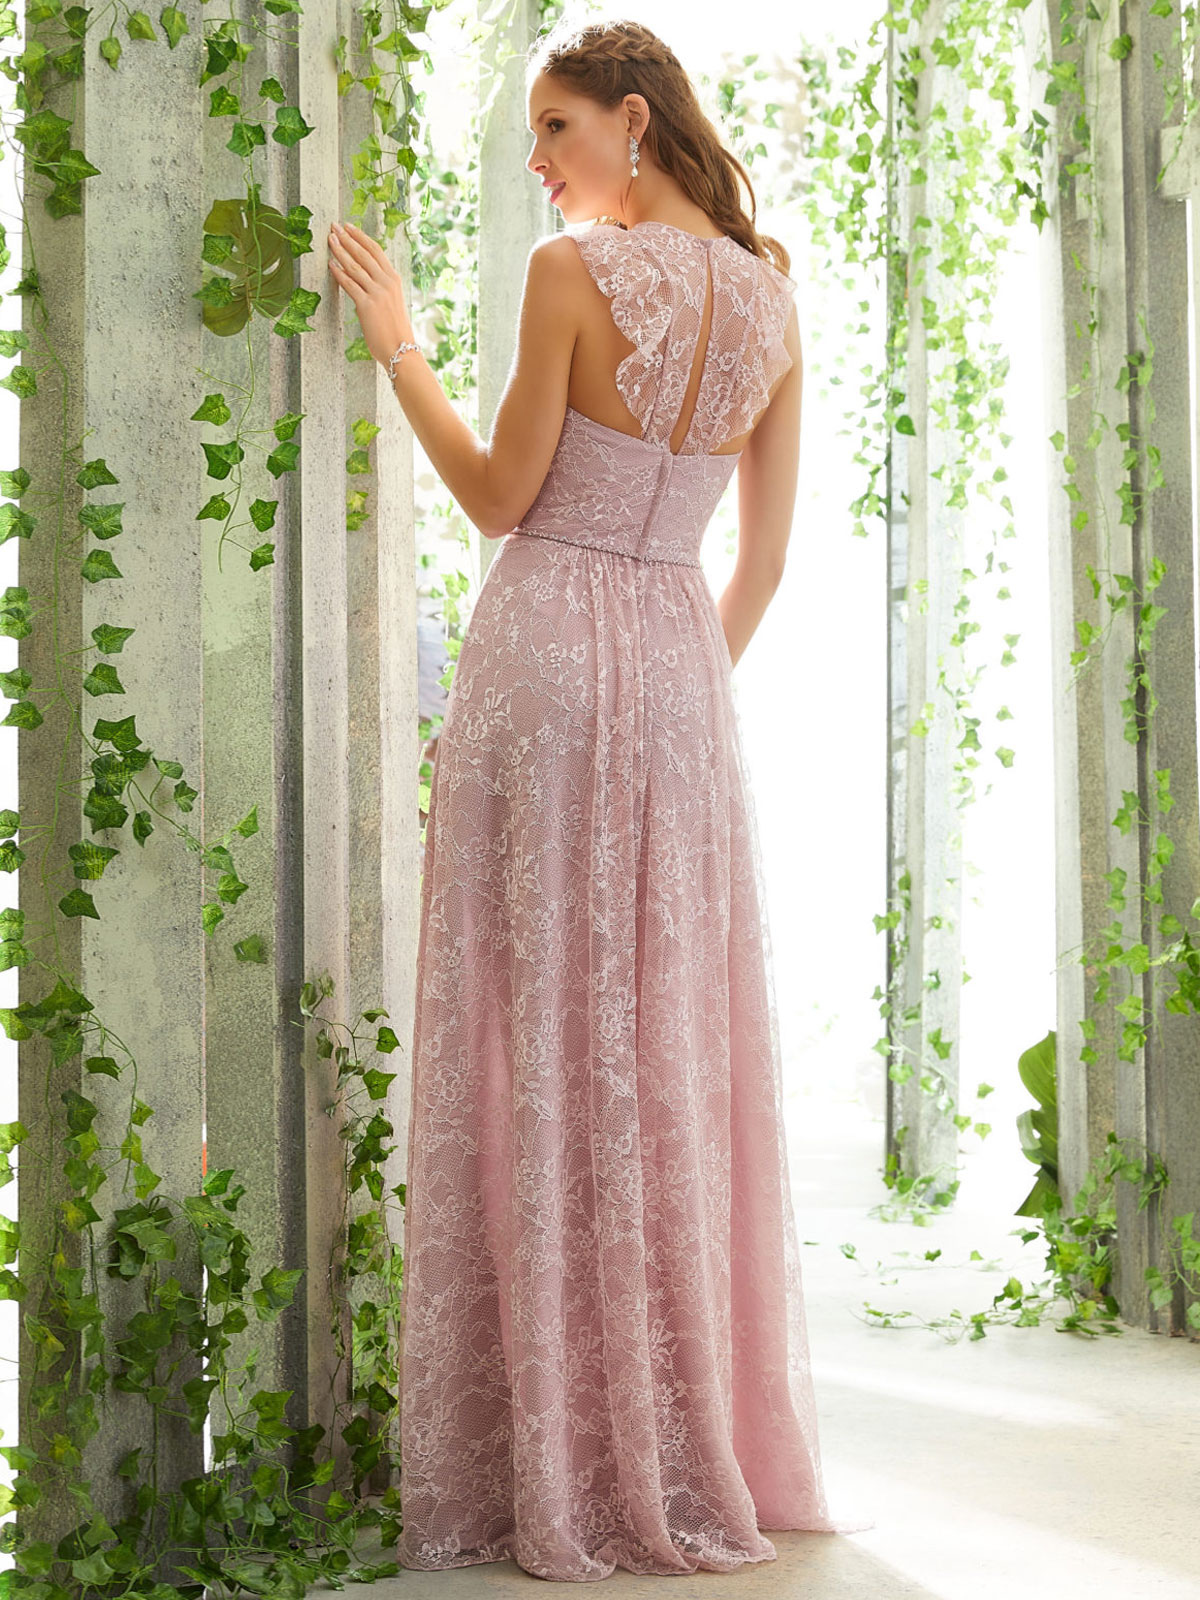 Mariage Robes de soirée pour mariage | Robe de demoiselle d'honneur rose A-ligne longueur plancher sans manches en dentelle robe de bal - YF58013